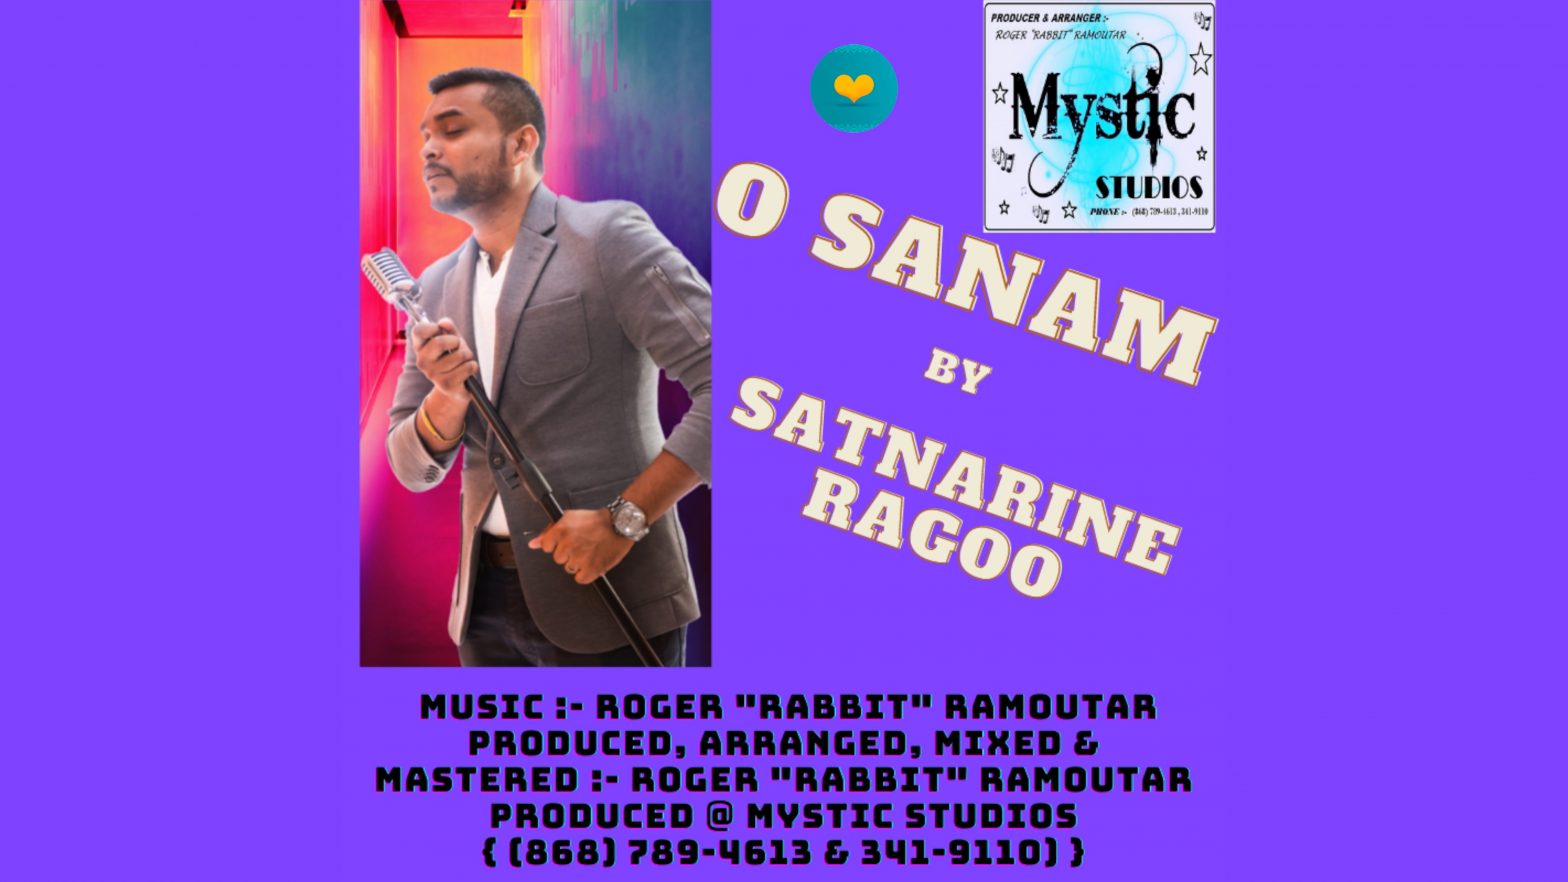 Satnarine Ragoo - O Sanam